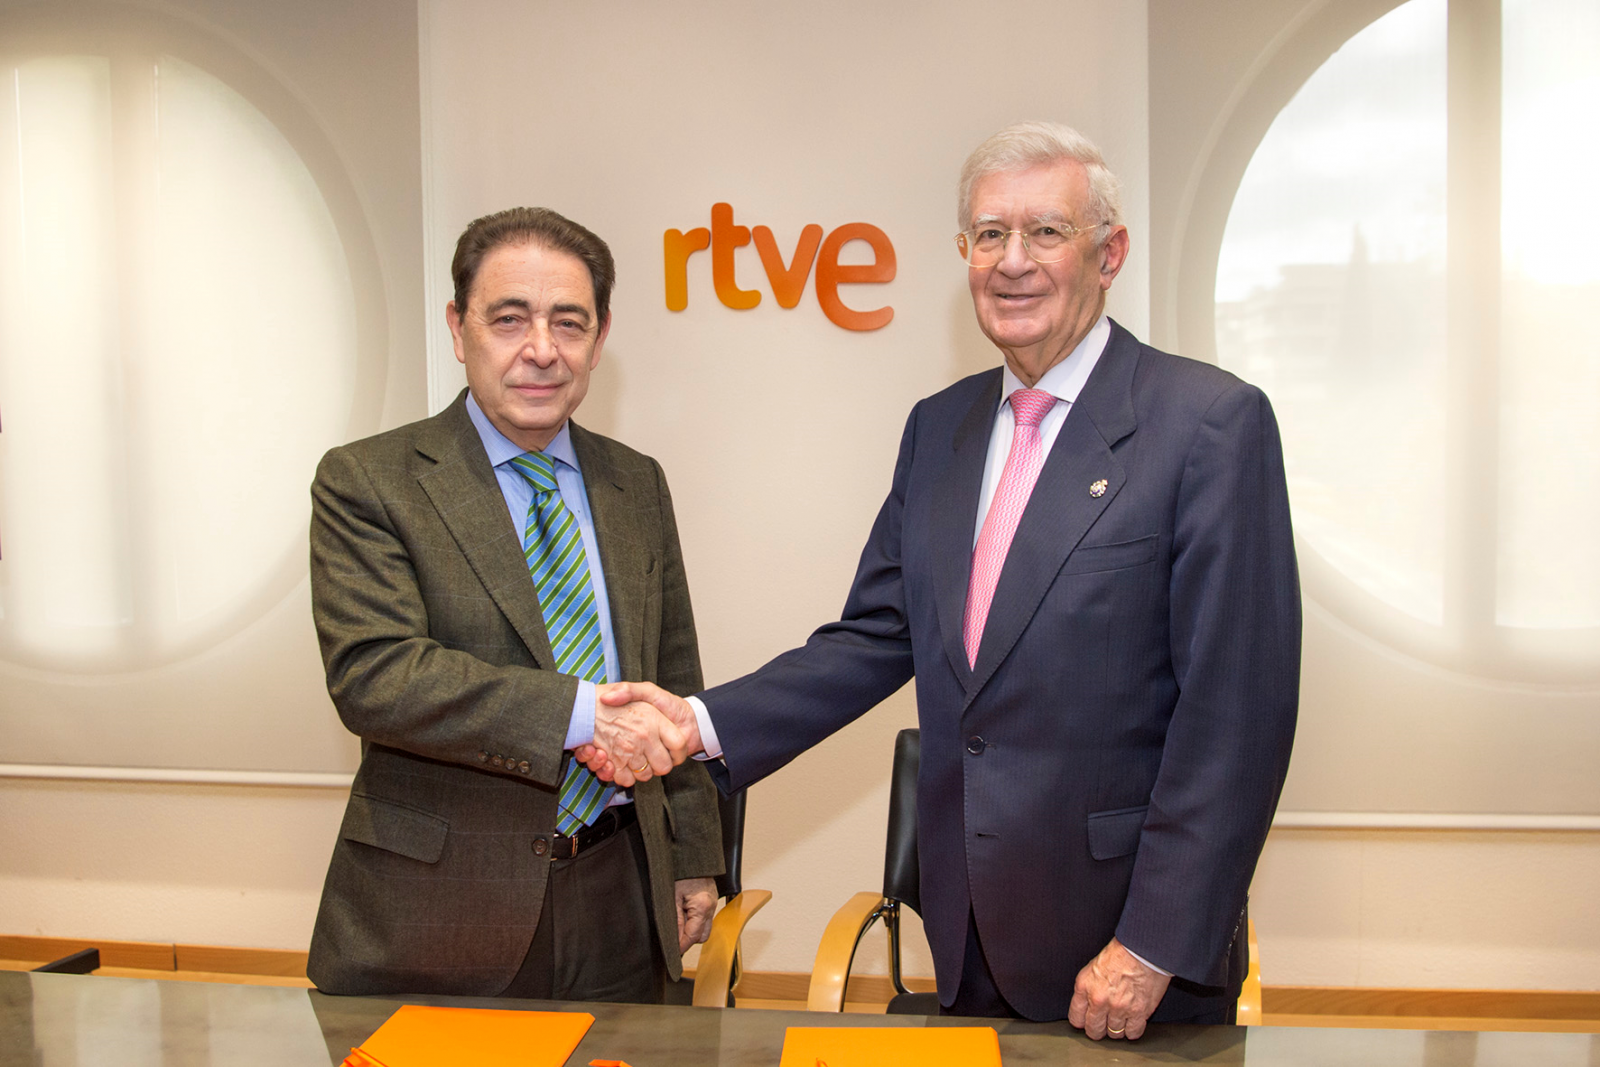 Federico Montero, director general corporativo de RTVE y Antonio Colino, presidente de la Real Academia de Ingeniería, renuevan el convenio entre RTVE y la Real Academia de Ingeniería